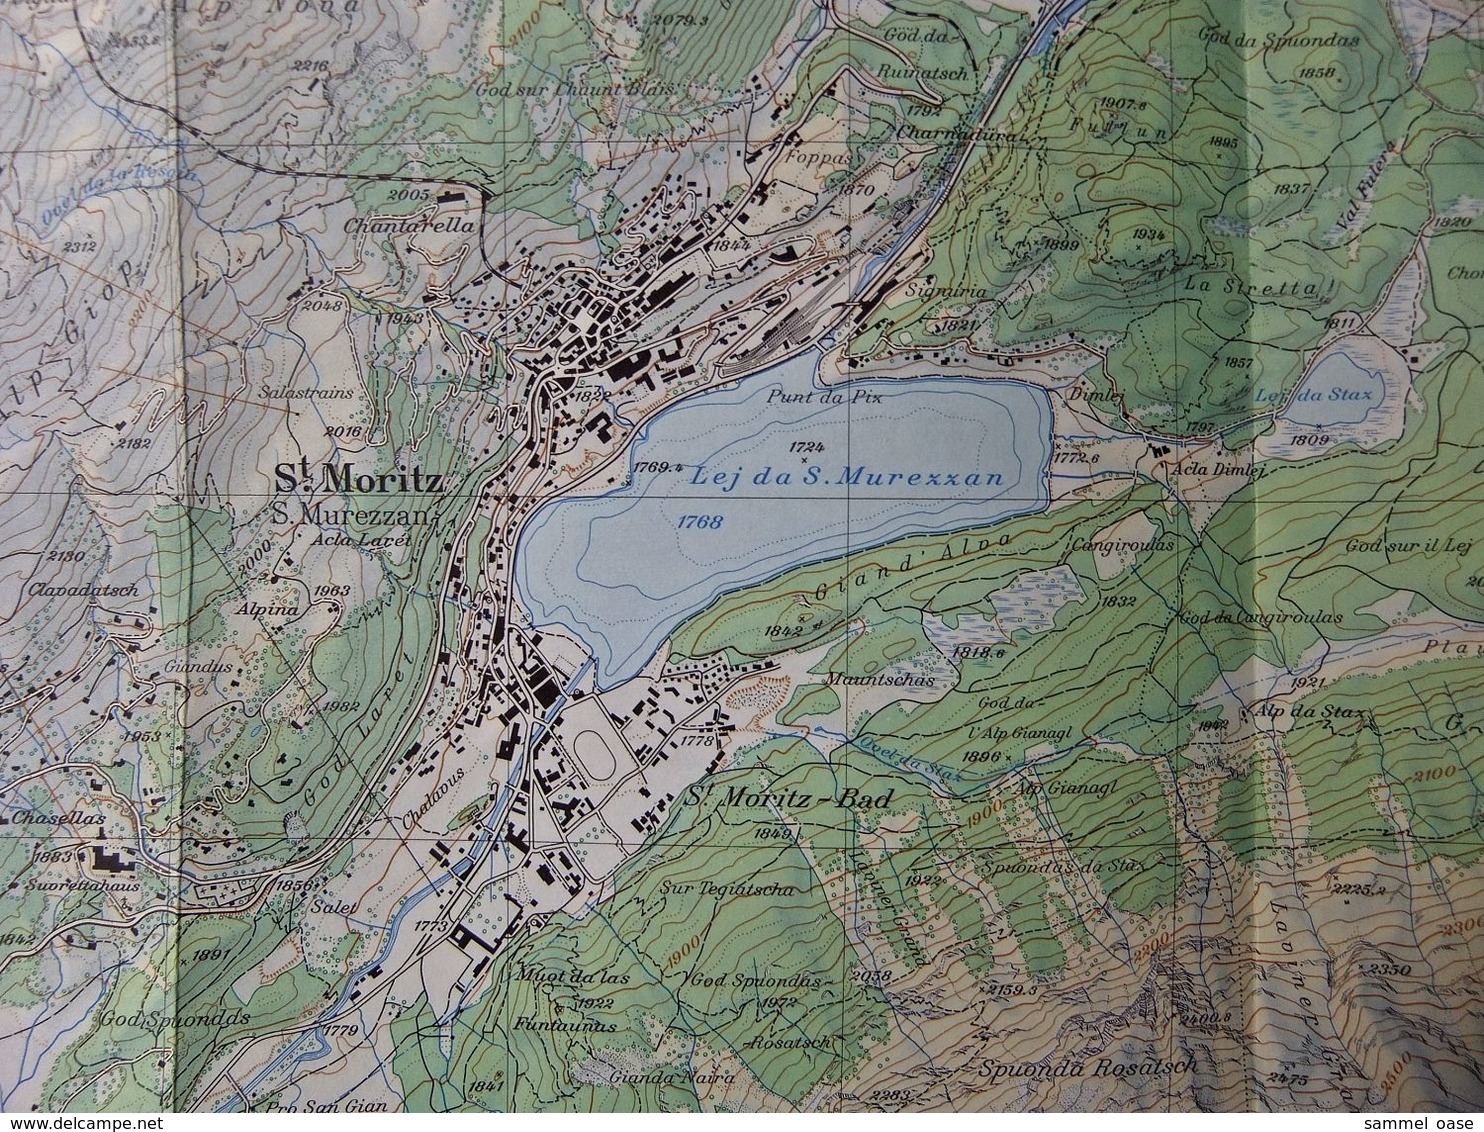 Topographische Karte / Landeskarte Der Schweiz  -  St. Moritz  - Blatt 1257  -  1:25 000  -  1958 - Wereldkaarten